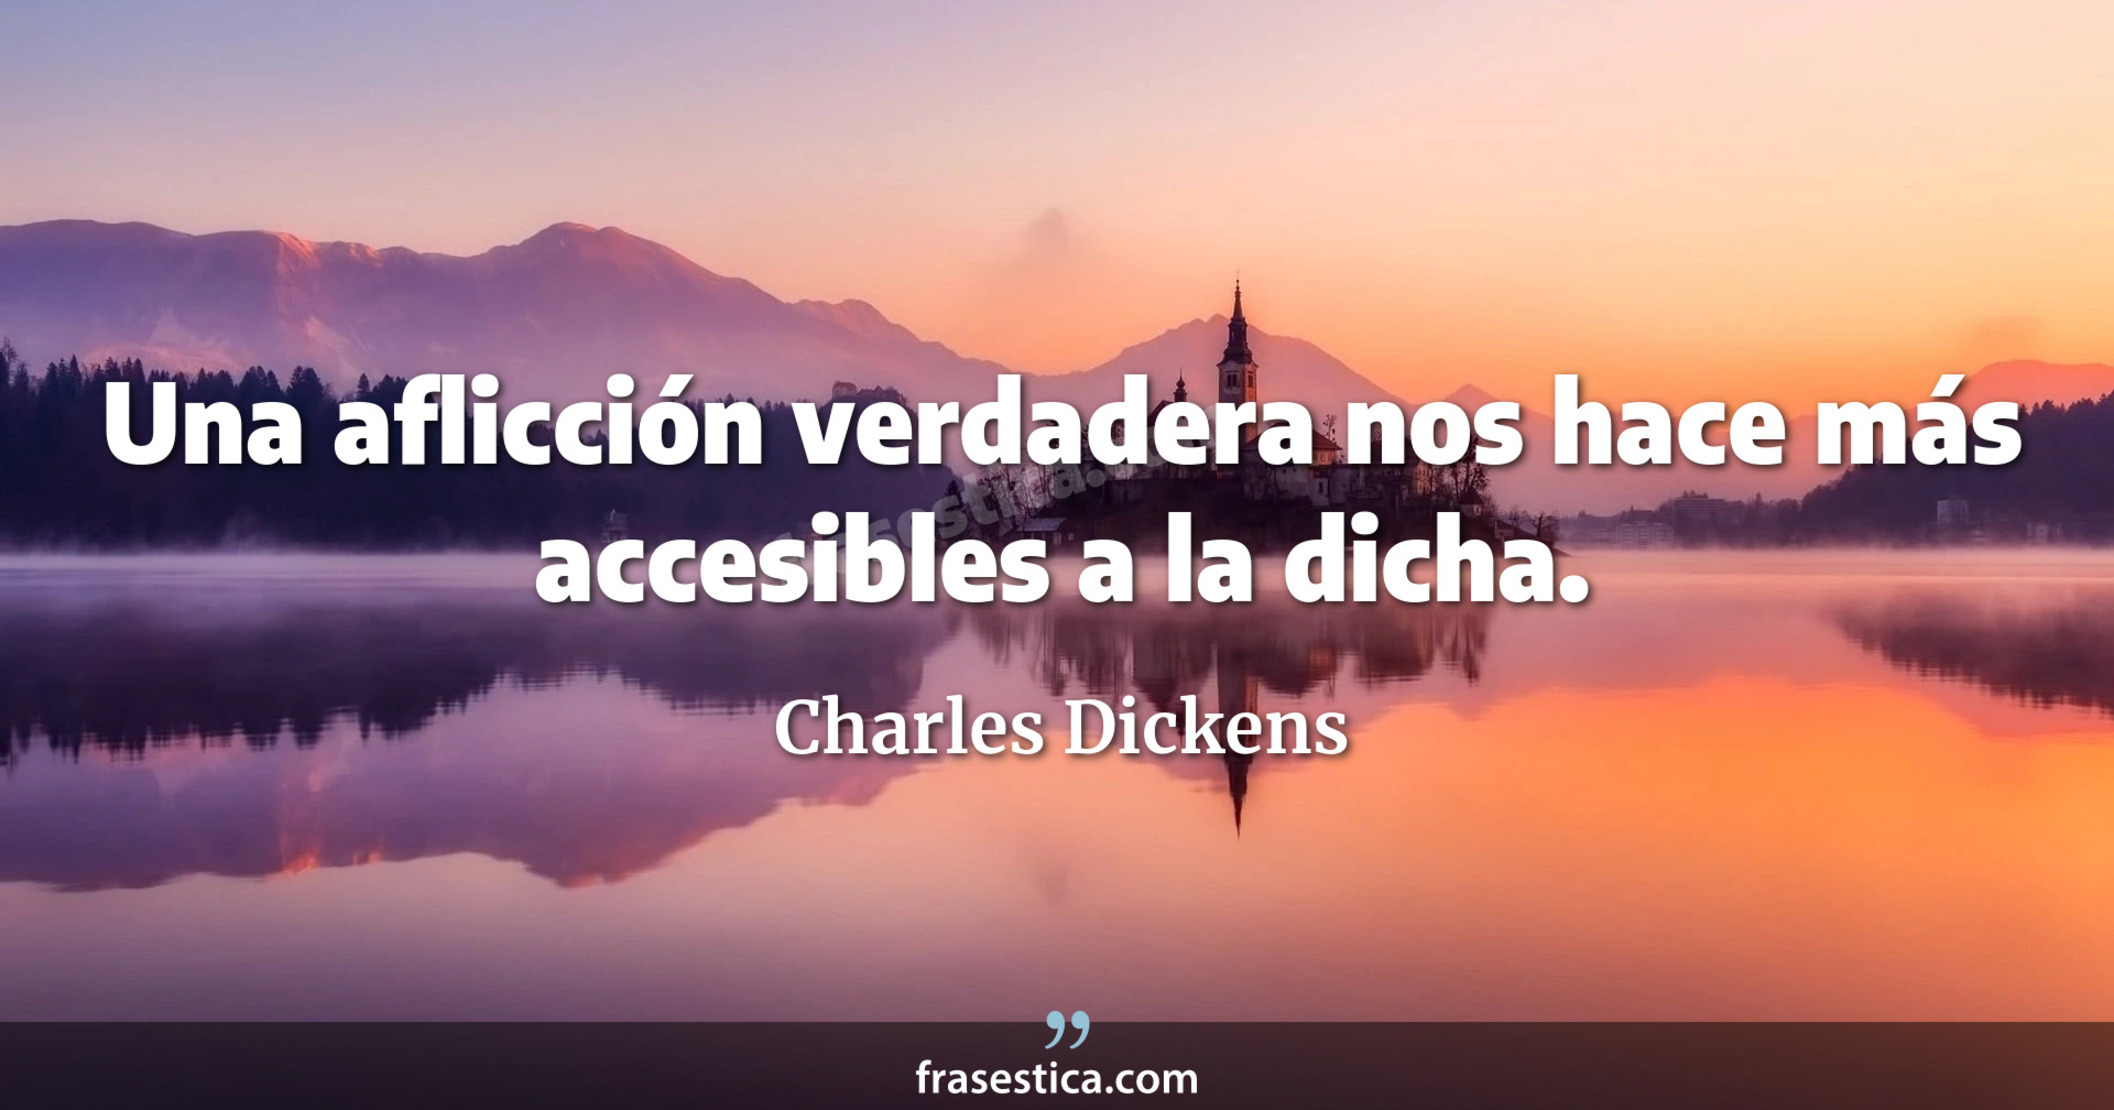 Una aflicción verdadera nos hace más accesibles a la dicha. - Charles Dickens